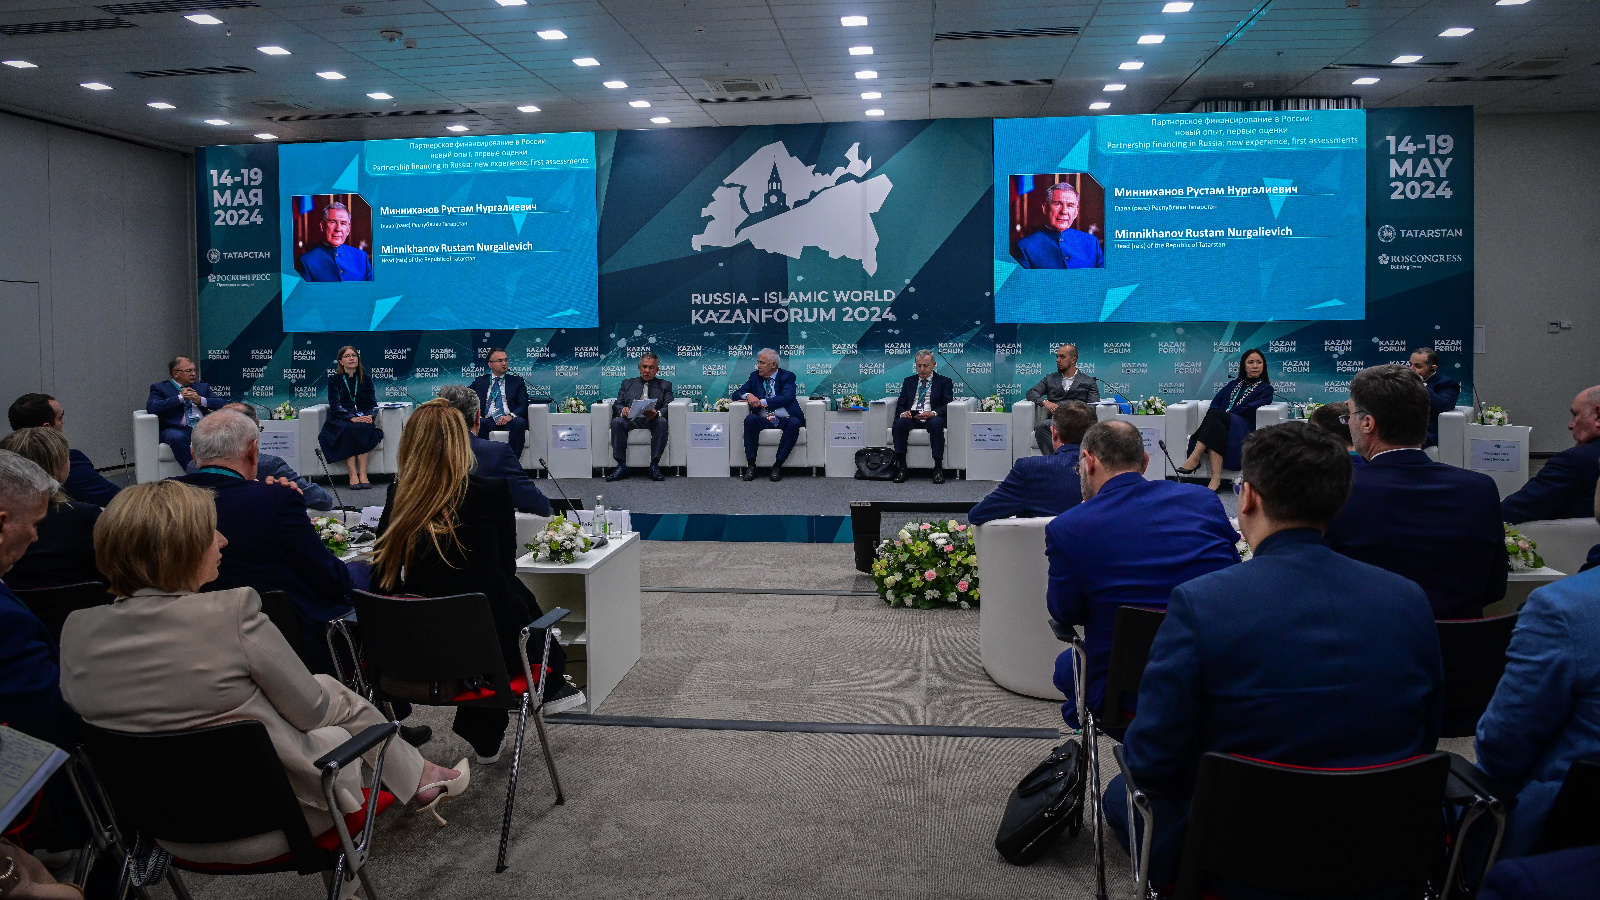 Рустам Минниханов на сессии по партнерскому финансированию: Регионального уровня для привлечения иностранных партнеров недостаточно, нужна серьезная федеральная поддержка